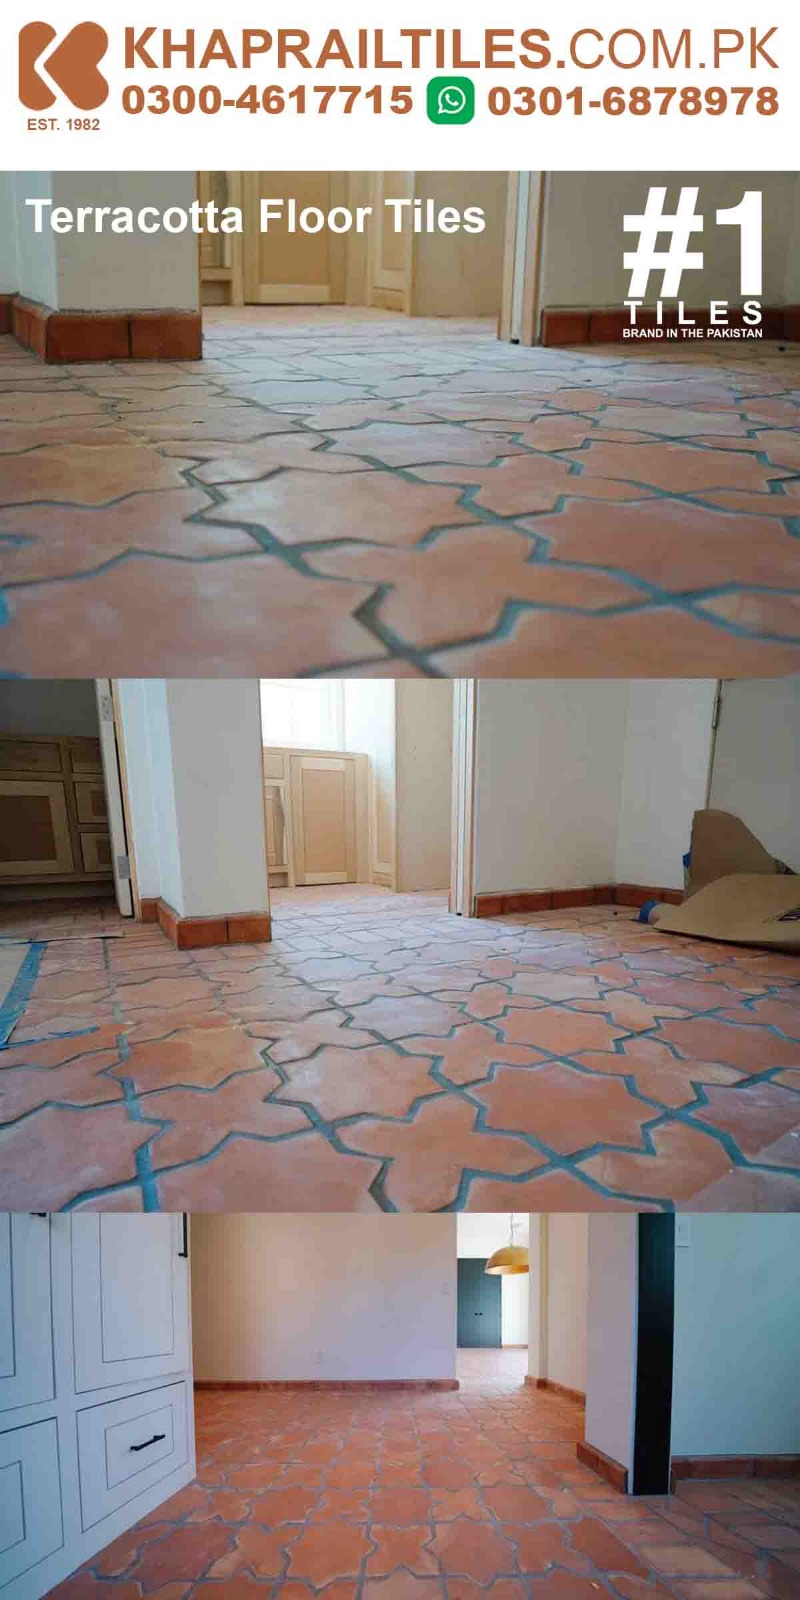 48 Khaprail Star and Cross Terracotta Floor Tiles for Living Room